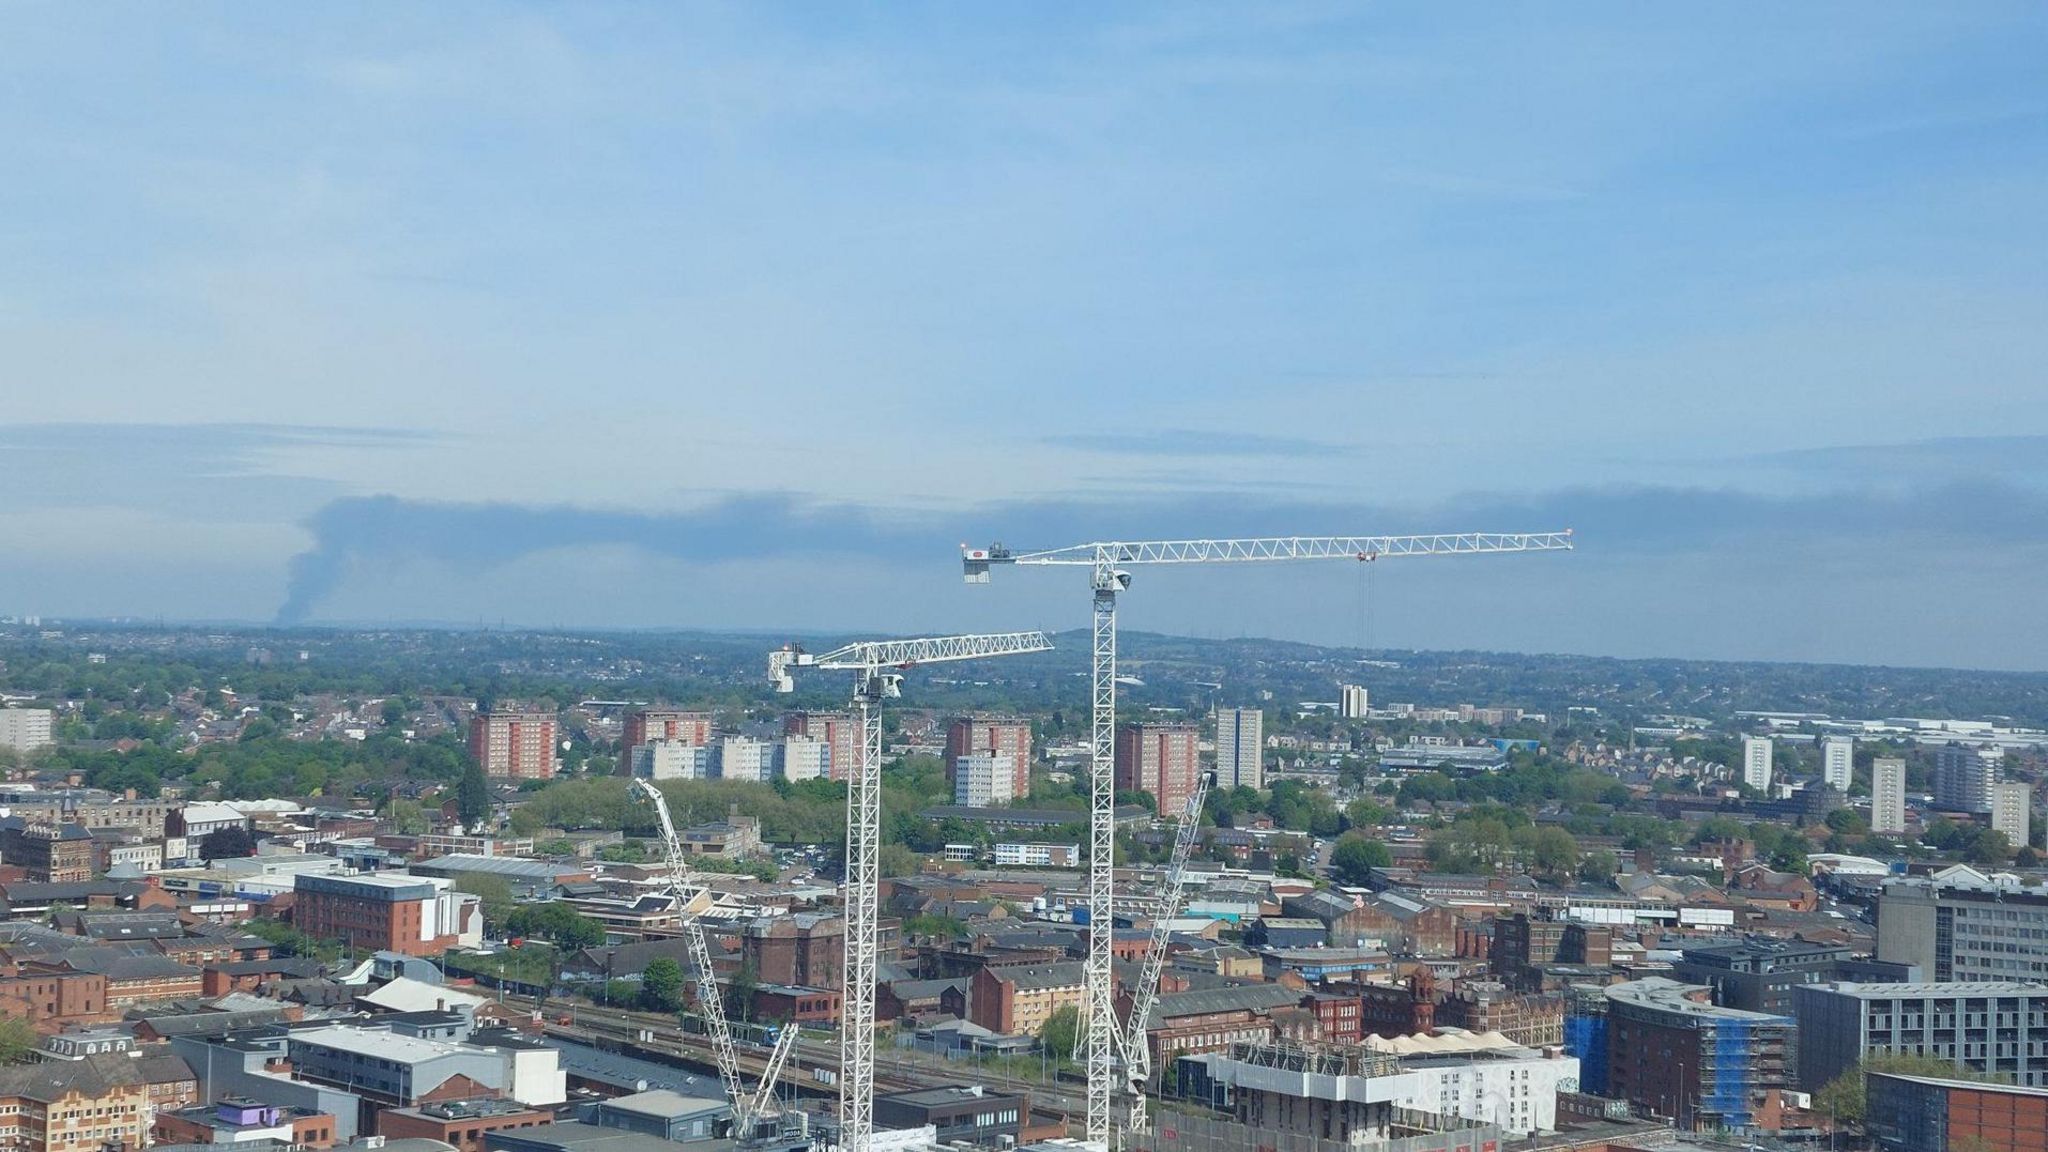 The smoke plume in Birmingham